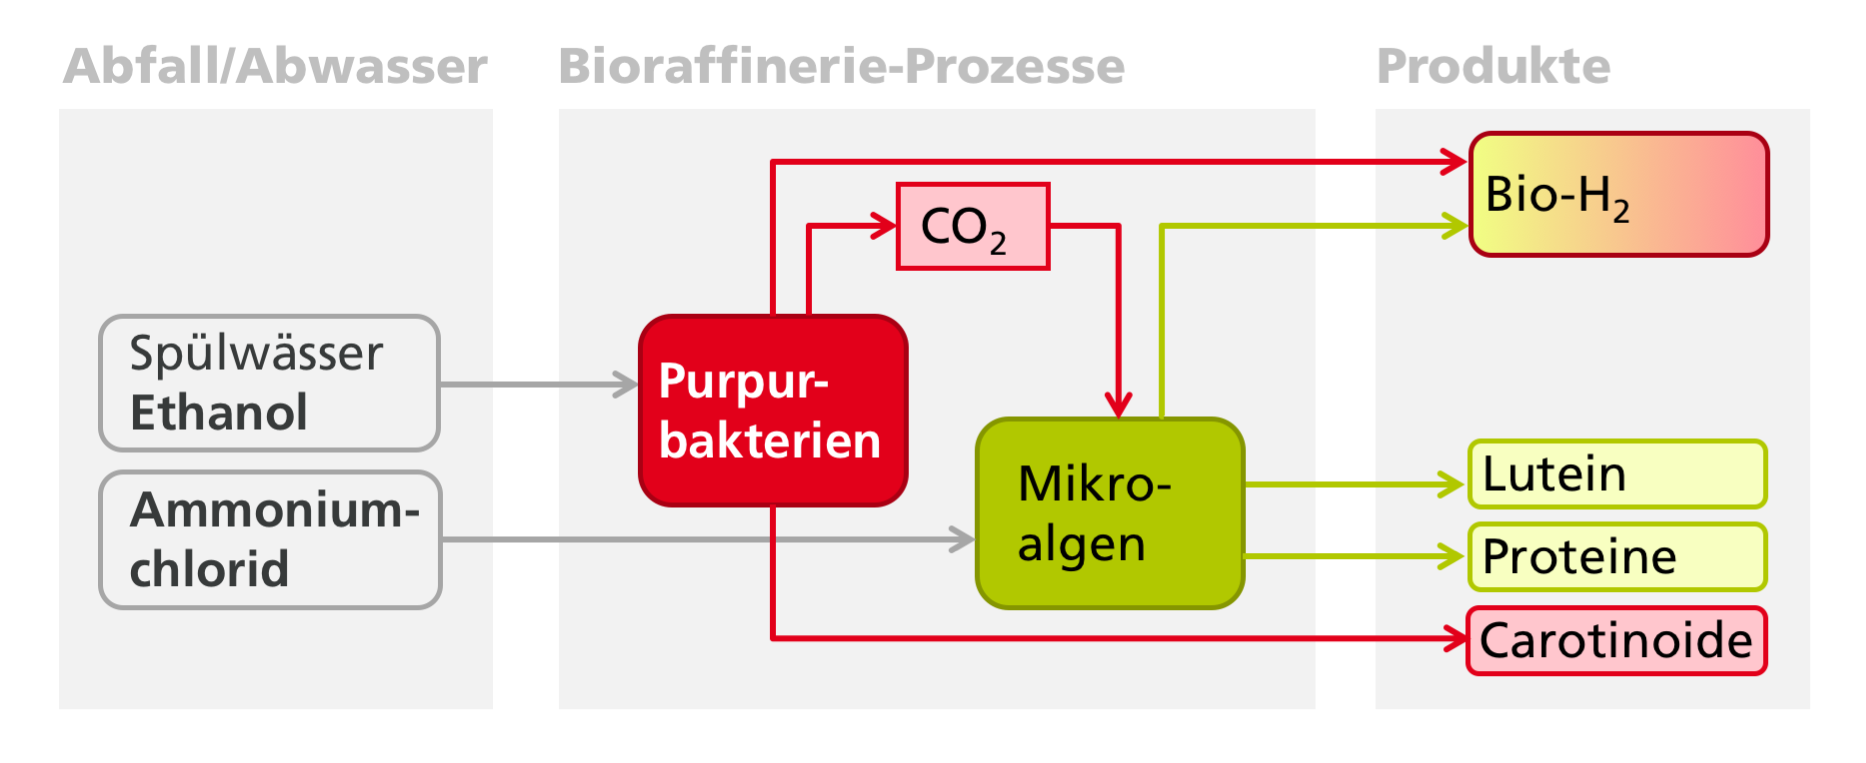 Im Projekt SmartBioH2-BW wird mittels zweier miteinander verknüpfter biotechnologischer Verfahren (Purpurbakterien und Algen) aus anfallenden industriellen Abwasser- und Reststoffströmen Biowasserstoff und weitere Produkte wie beispielsweise Carotinoide erzeugt werden. 